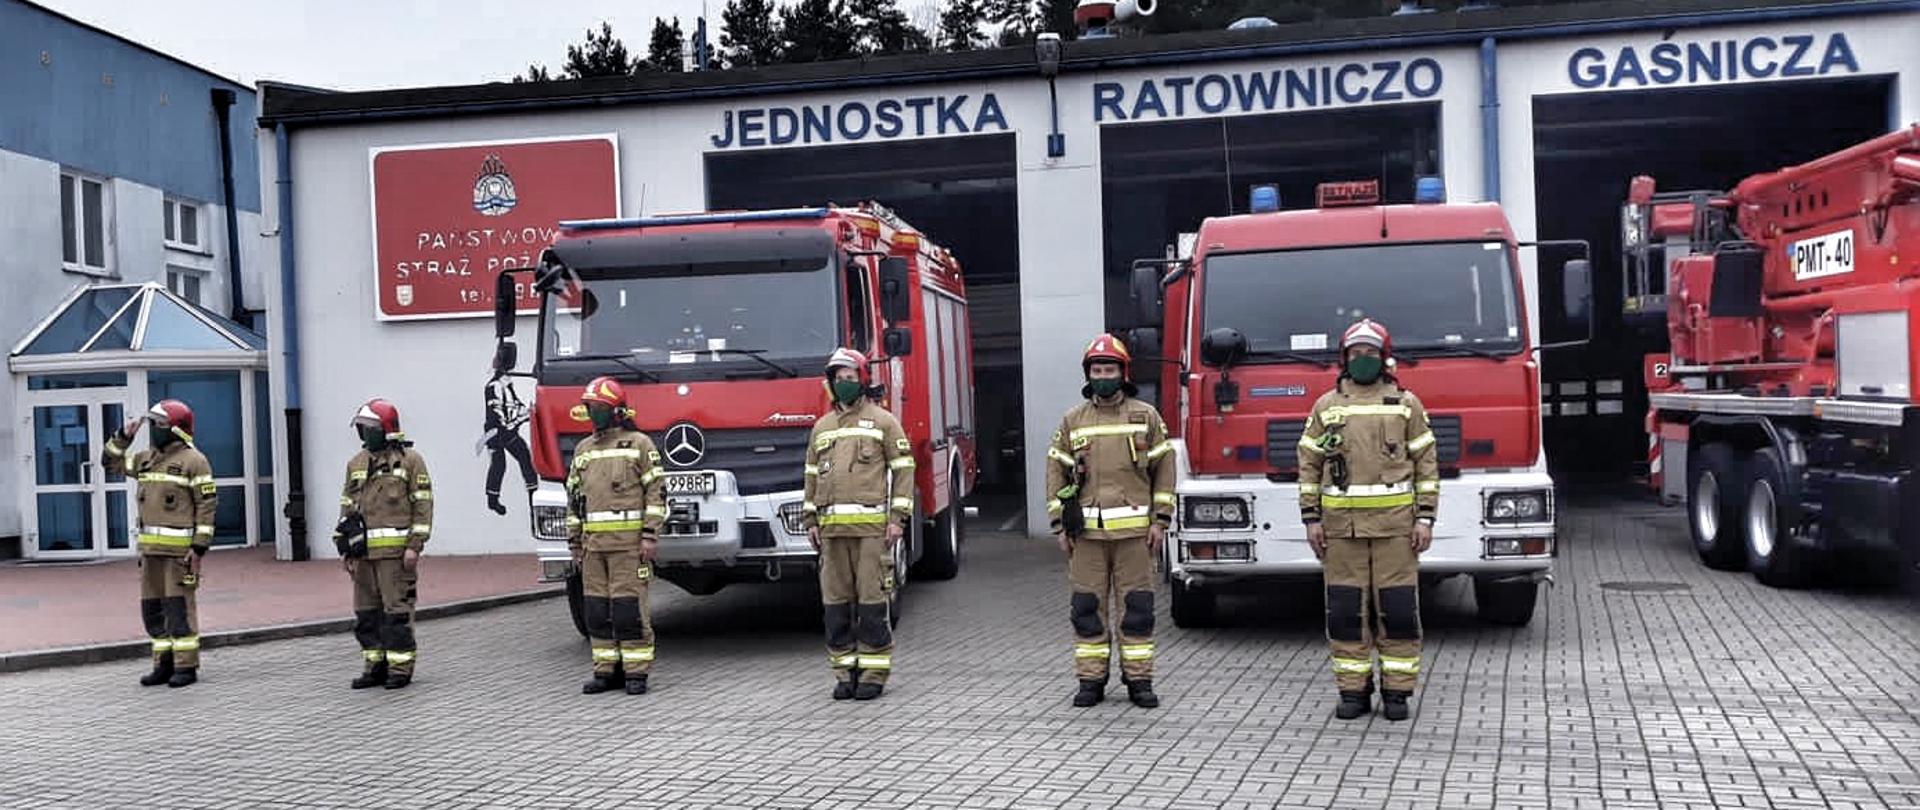 Zmiana służbowa stoi przed samochodami pożarniczymi i śpiewa "Mazurka Dąbrowskiego".